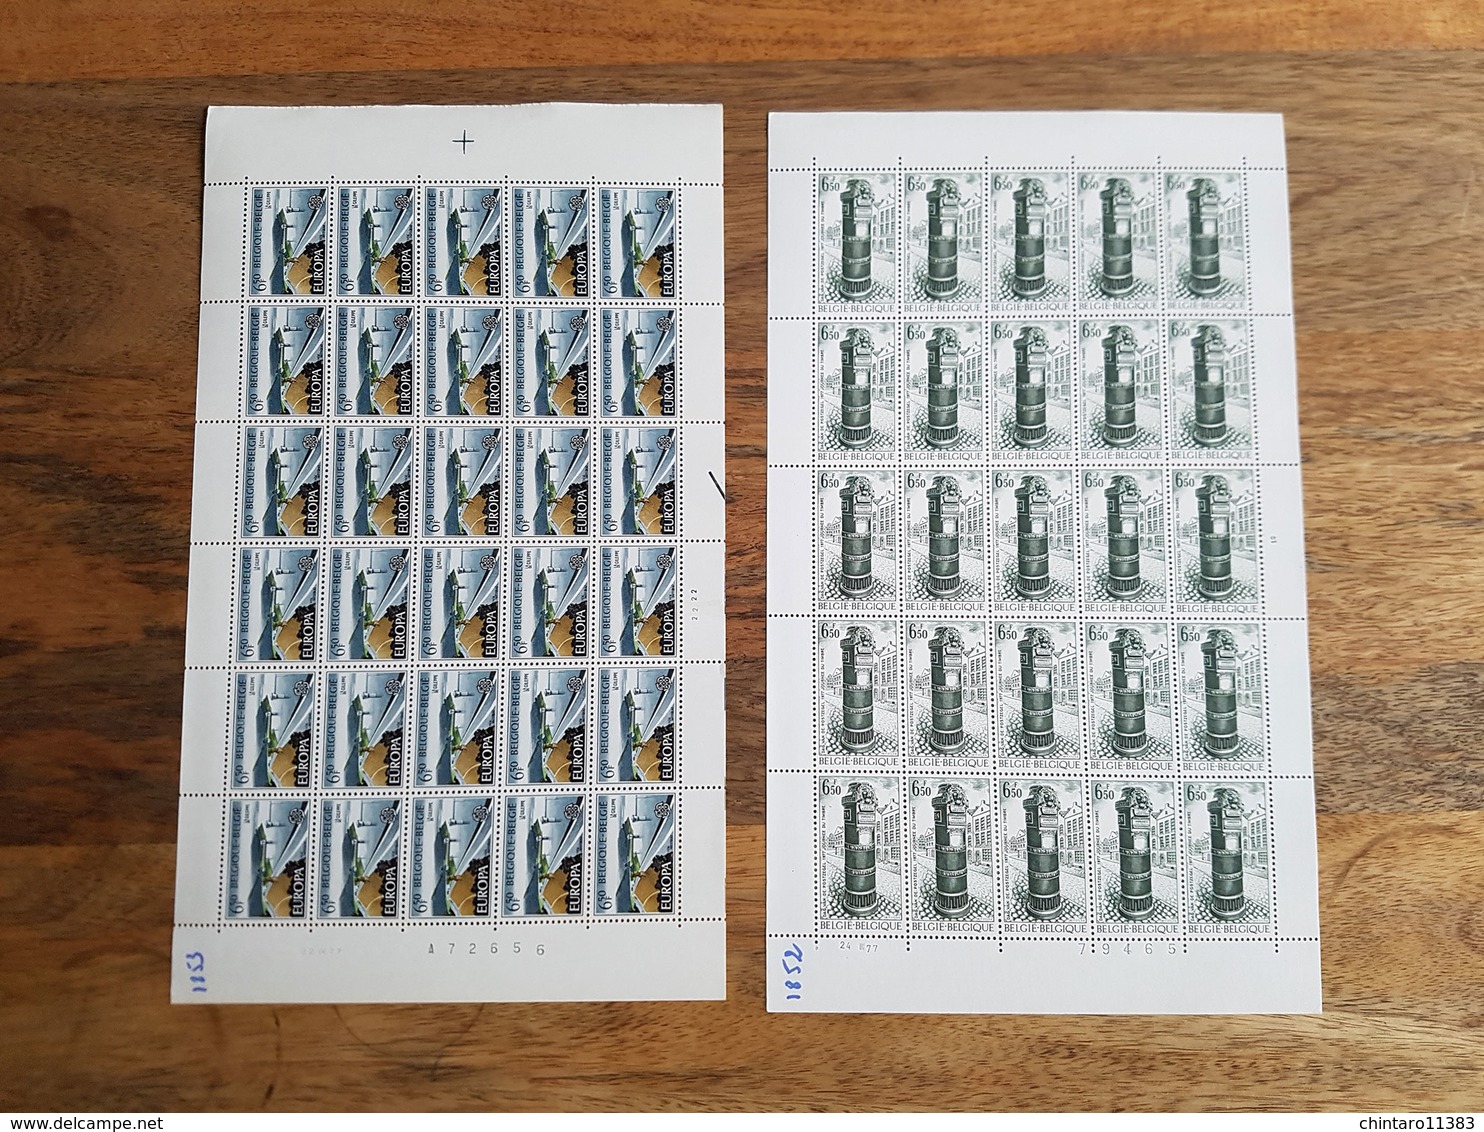 Lot feuilles complètes de timbres Belgique - Année 1977